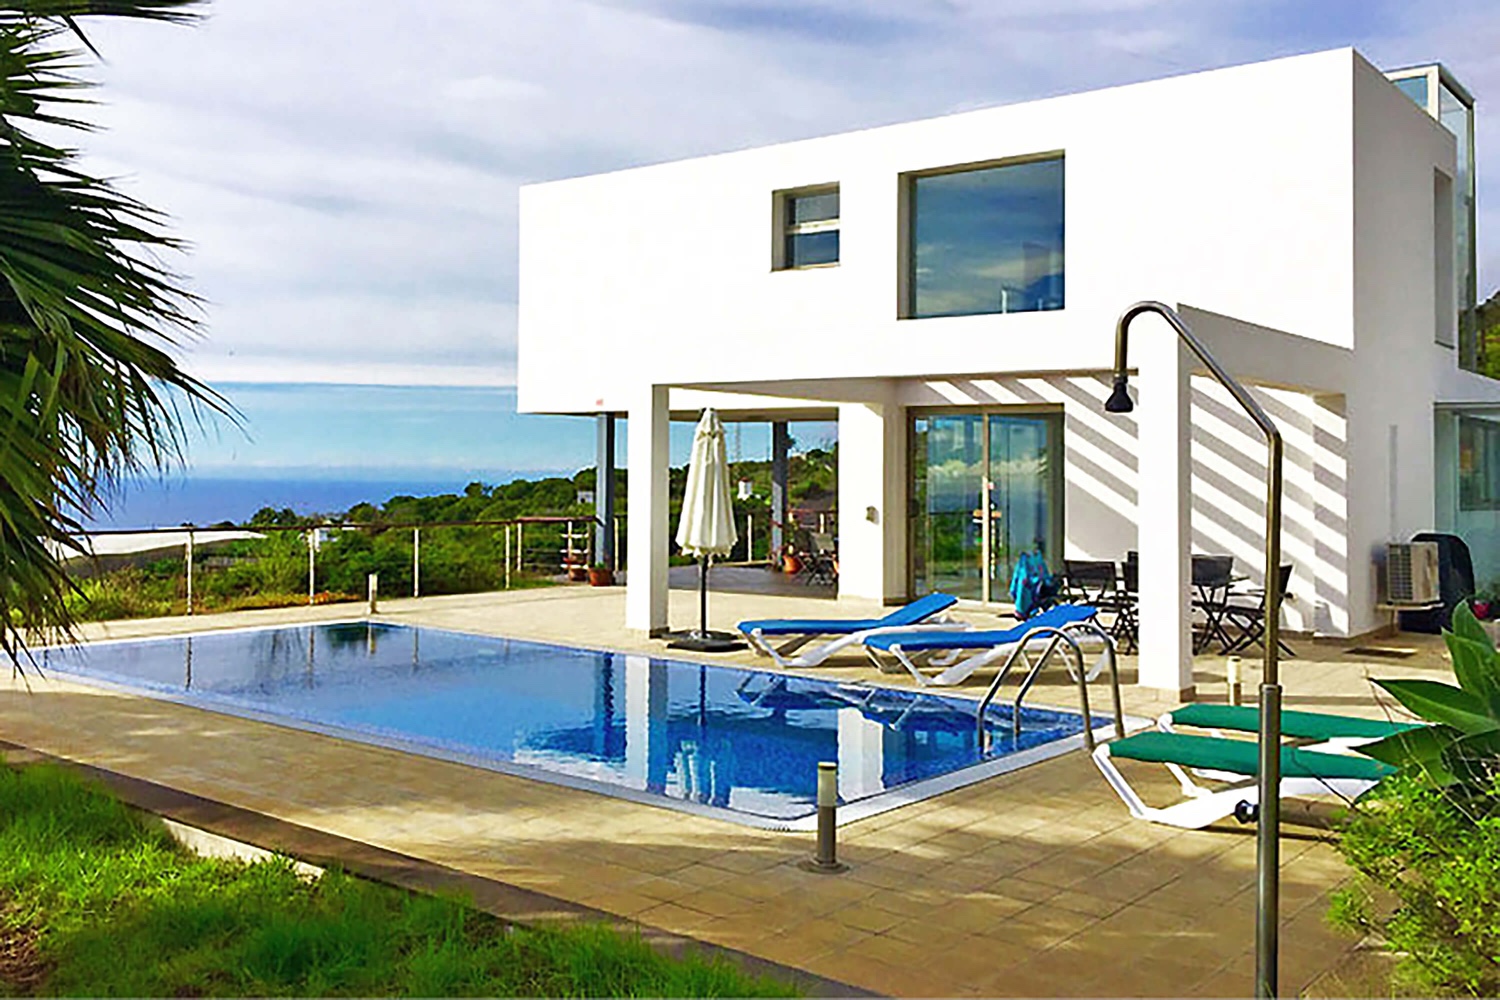 Ylellinen loma-asunto vuokrattavana La Palmassa, jossa on moderni arkkitehtuuri, suuri uima-allas ja kauniit panoraamanäkymät merelle